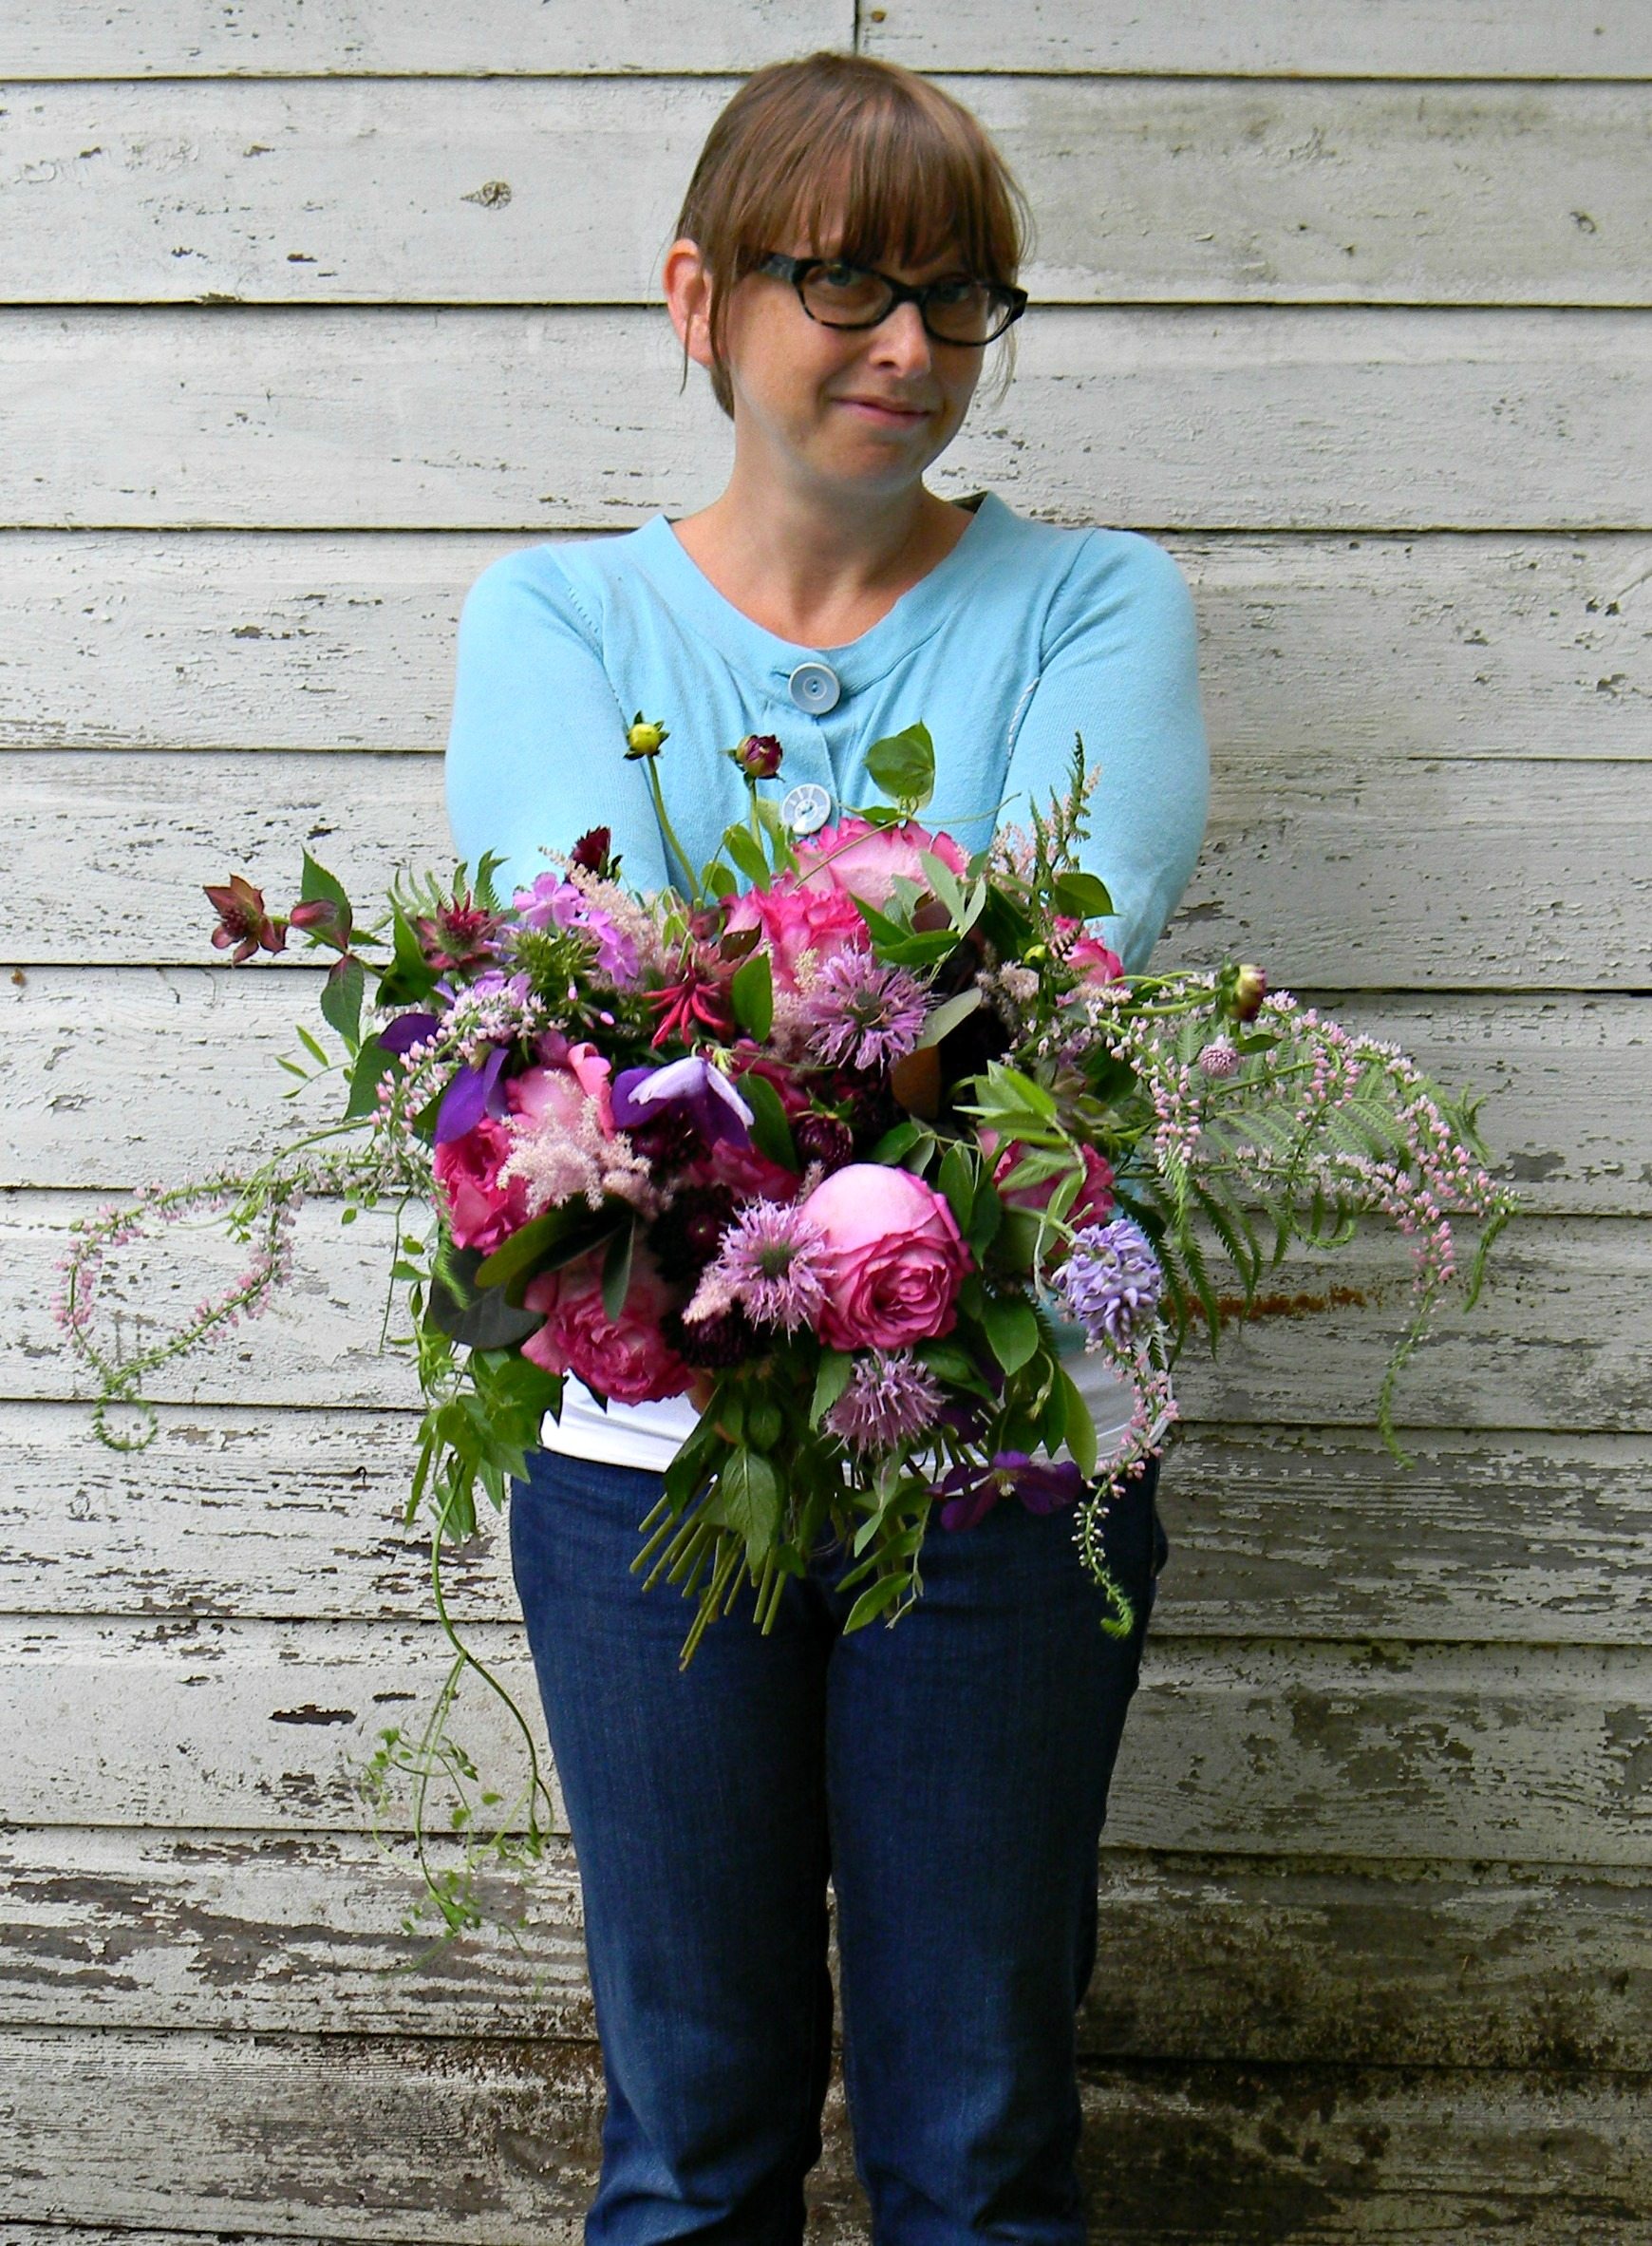 A woman holding a flower arrangement